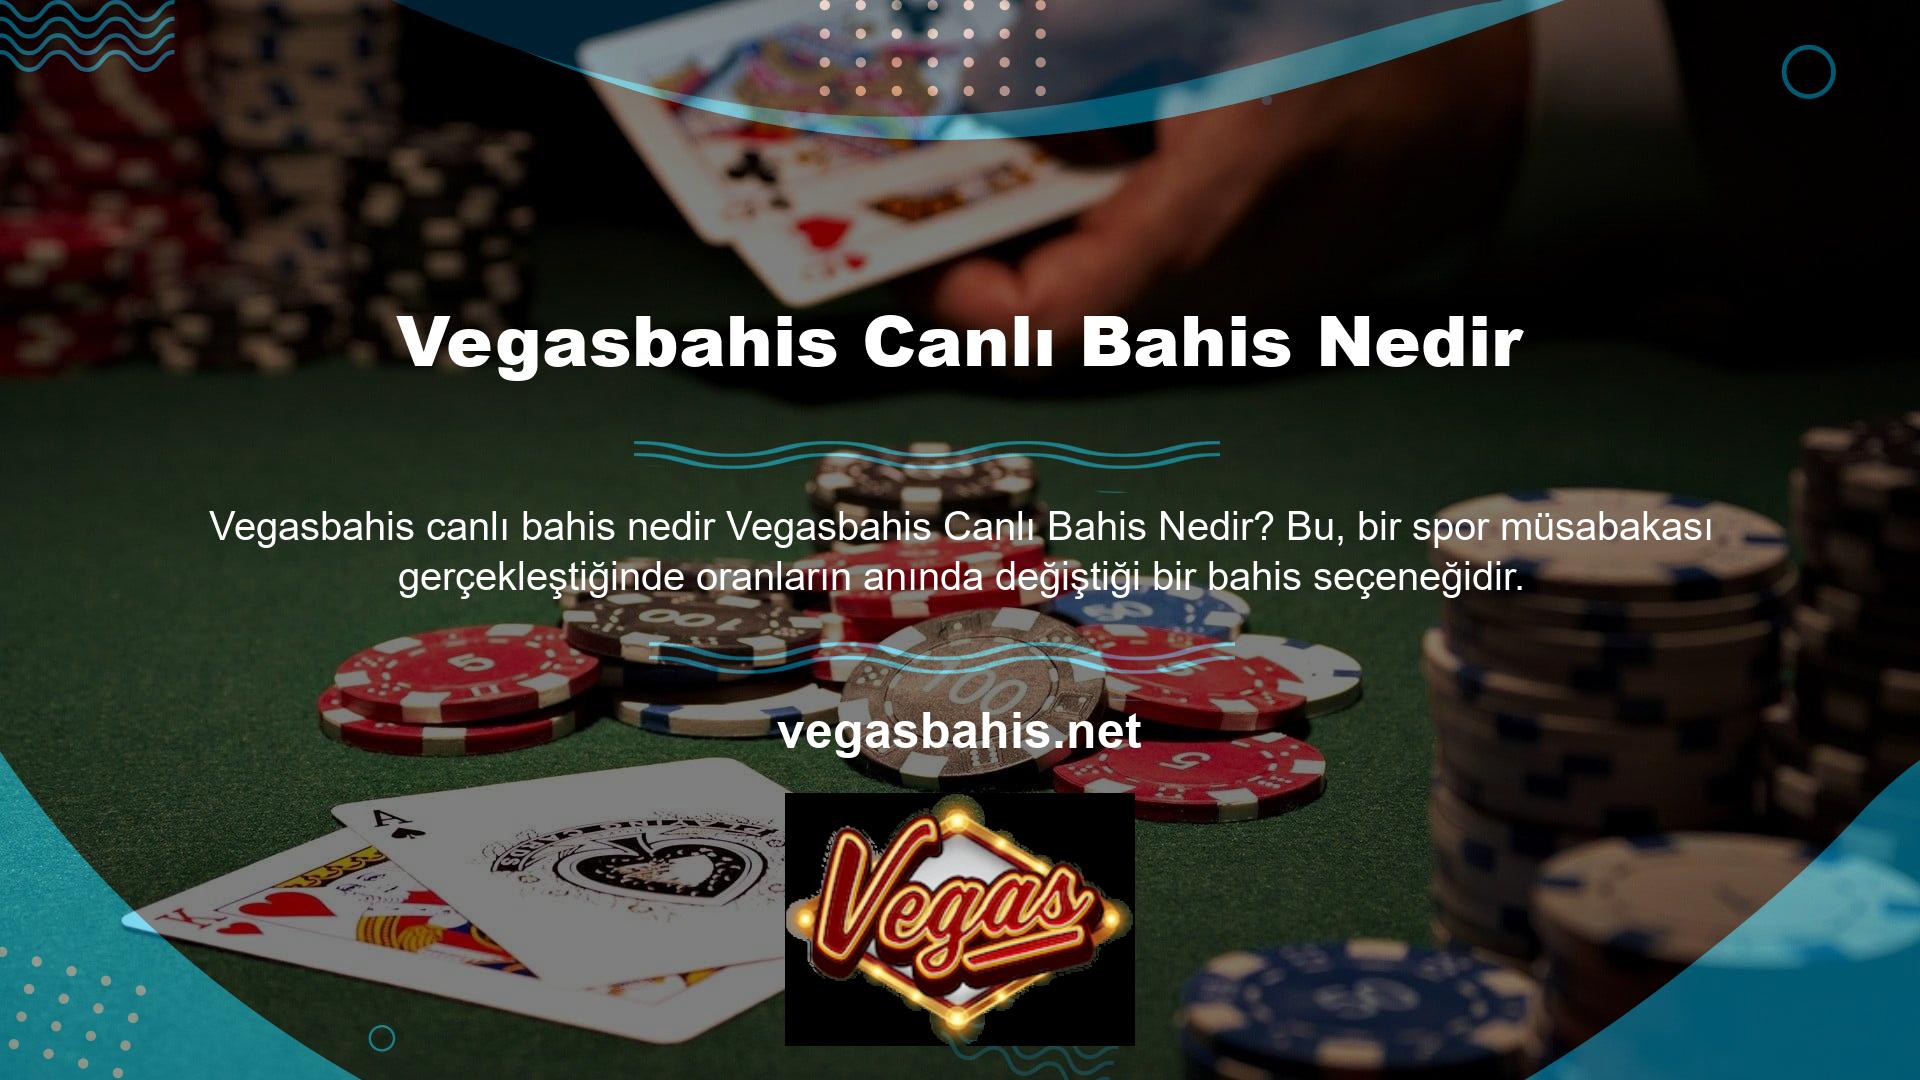 Casino Avrupa'nın birçok ülkesinde yasal olmasına rağmen ülkemizde yasaklanmıştır